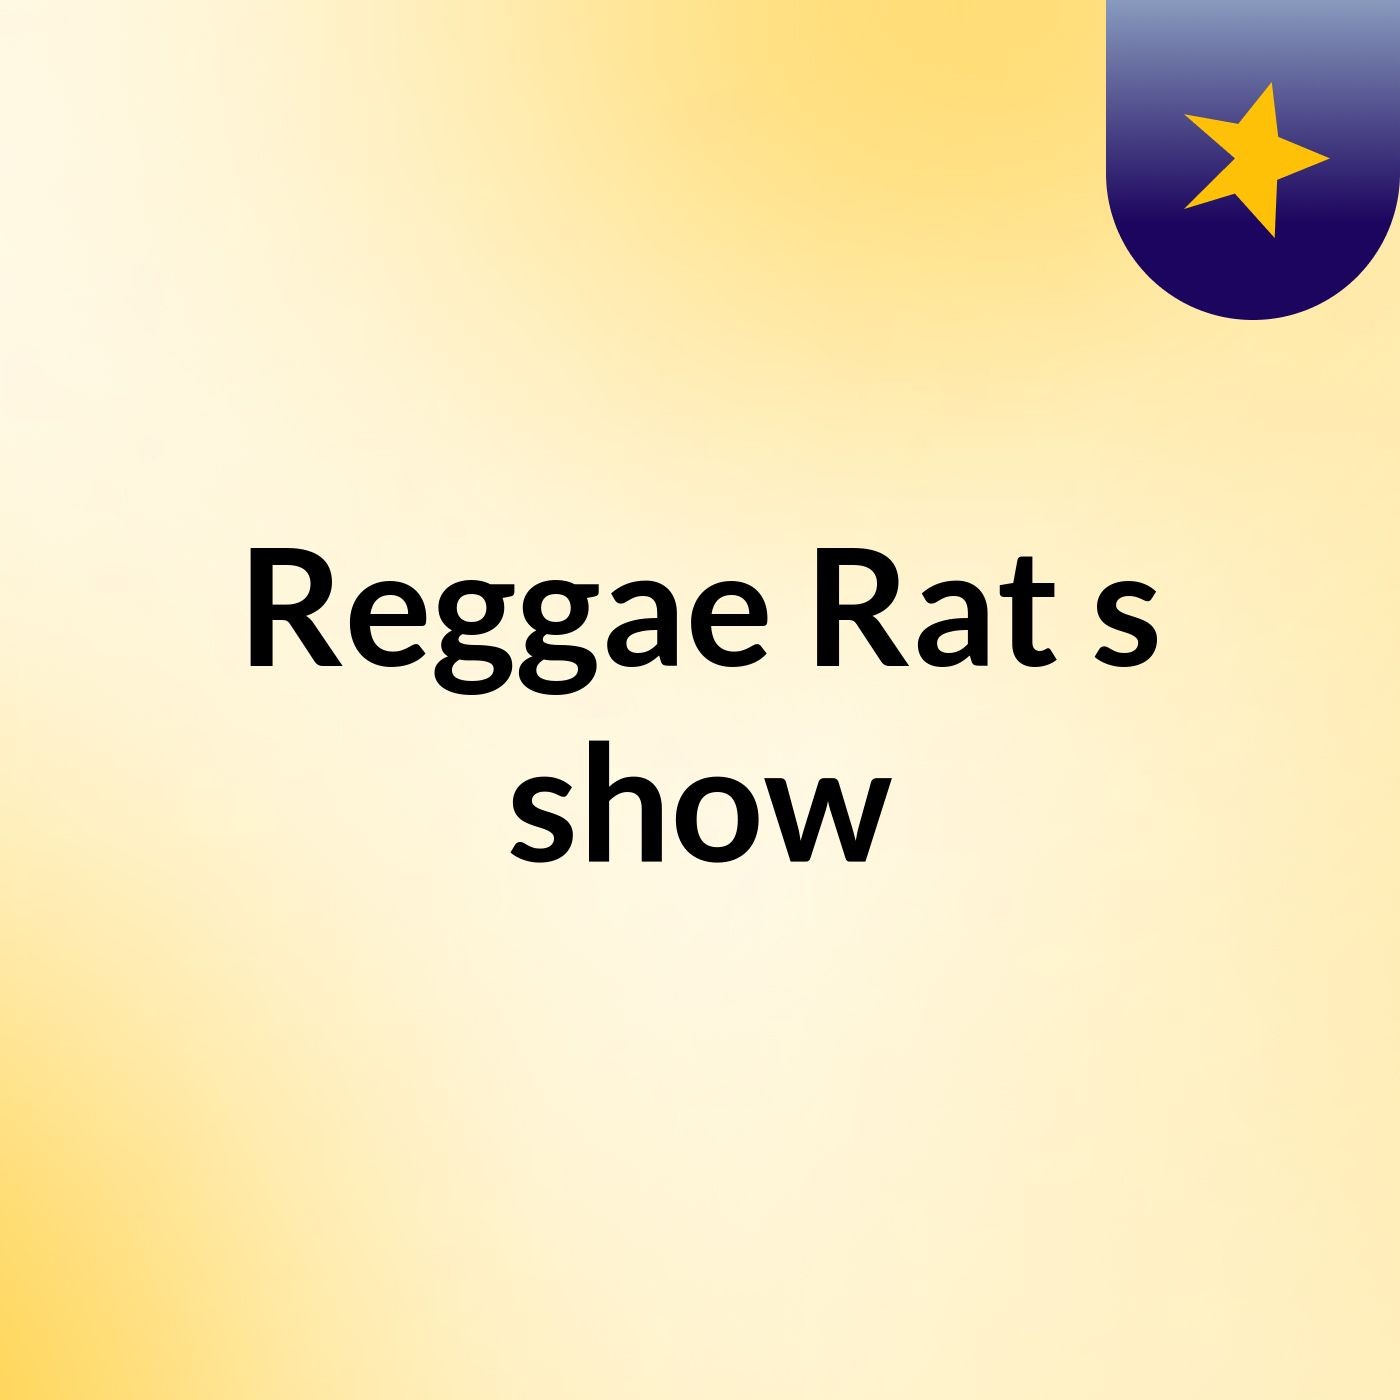 Reggae Rat's show